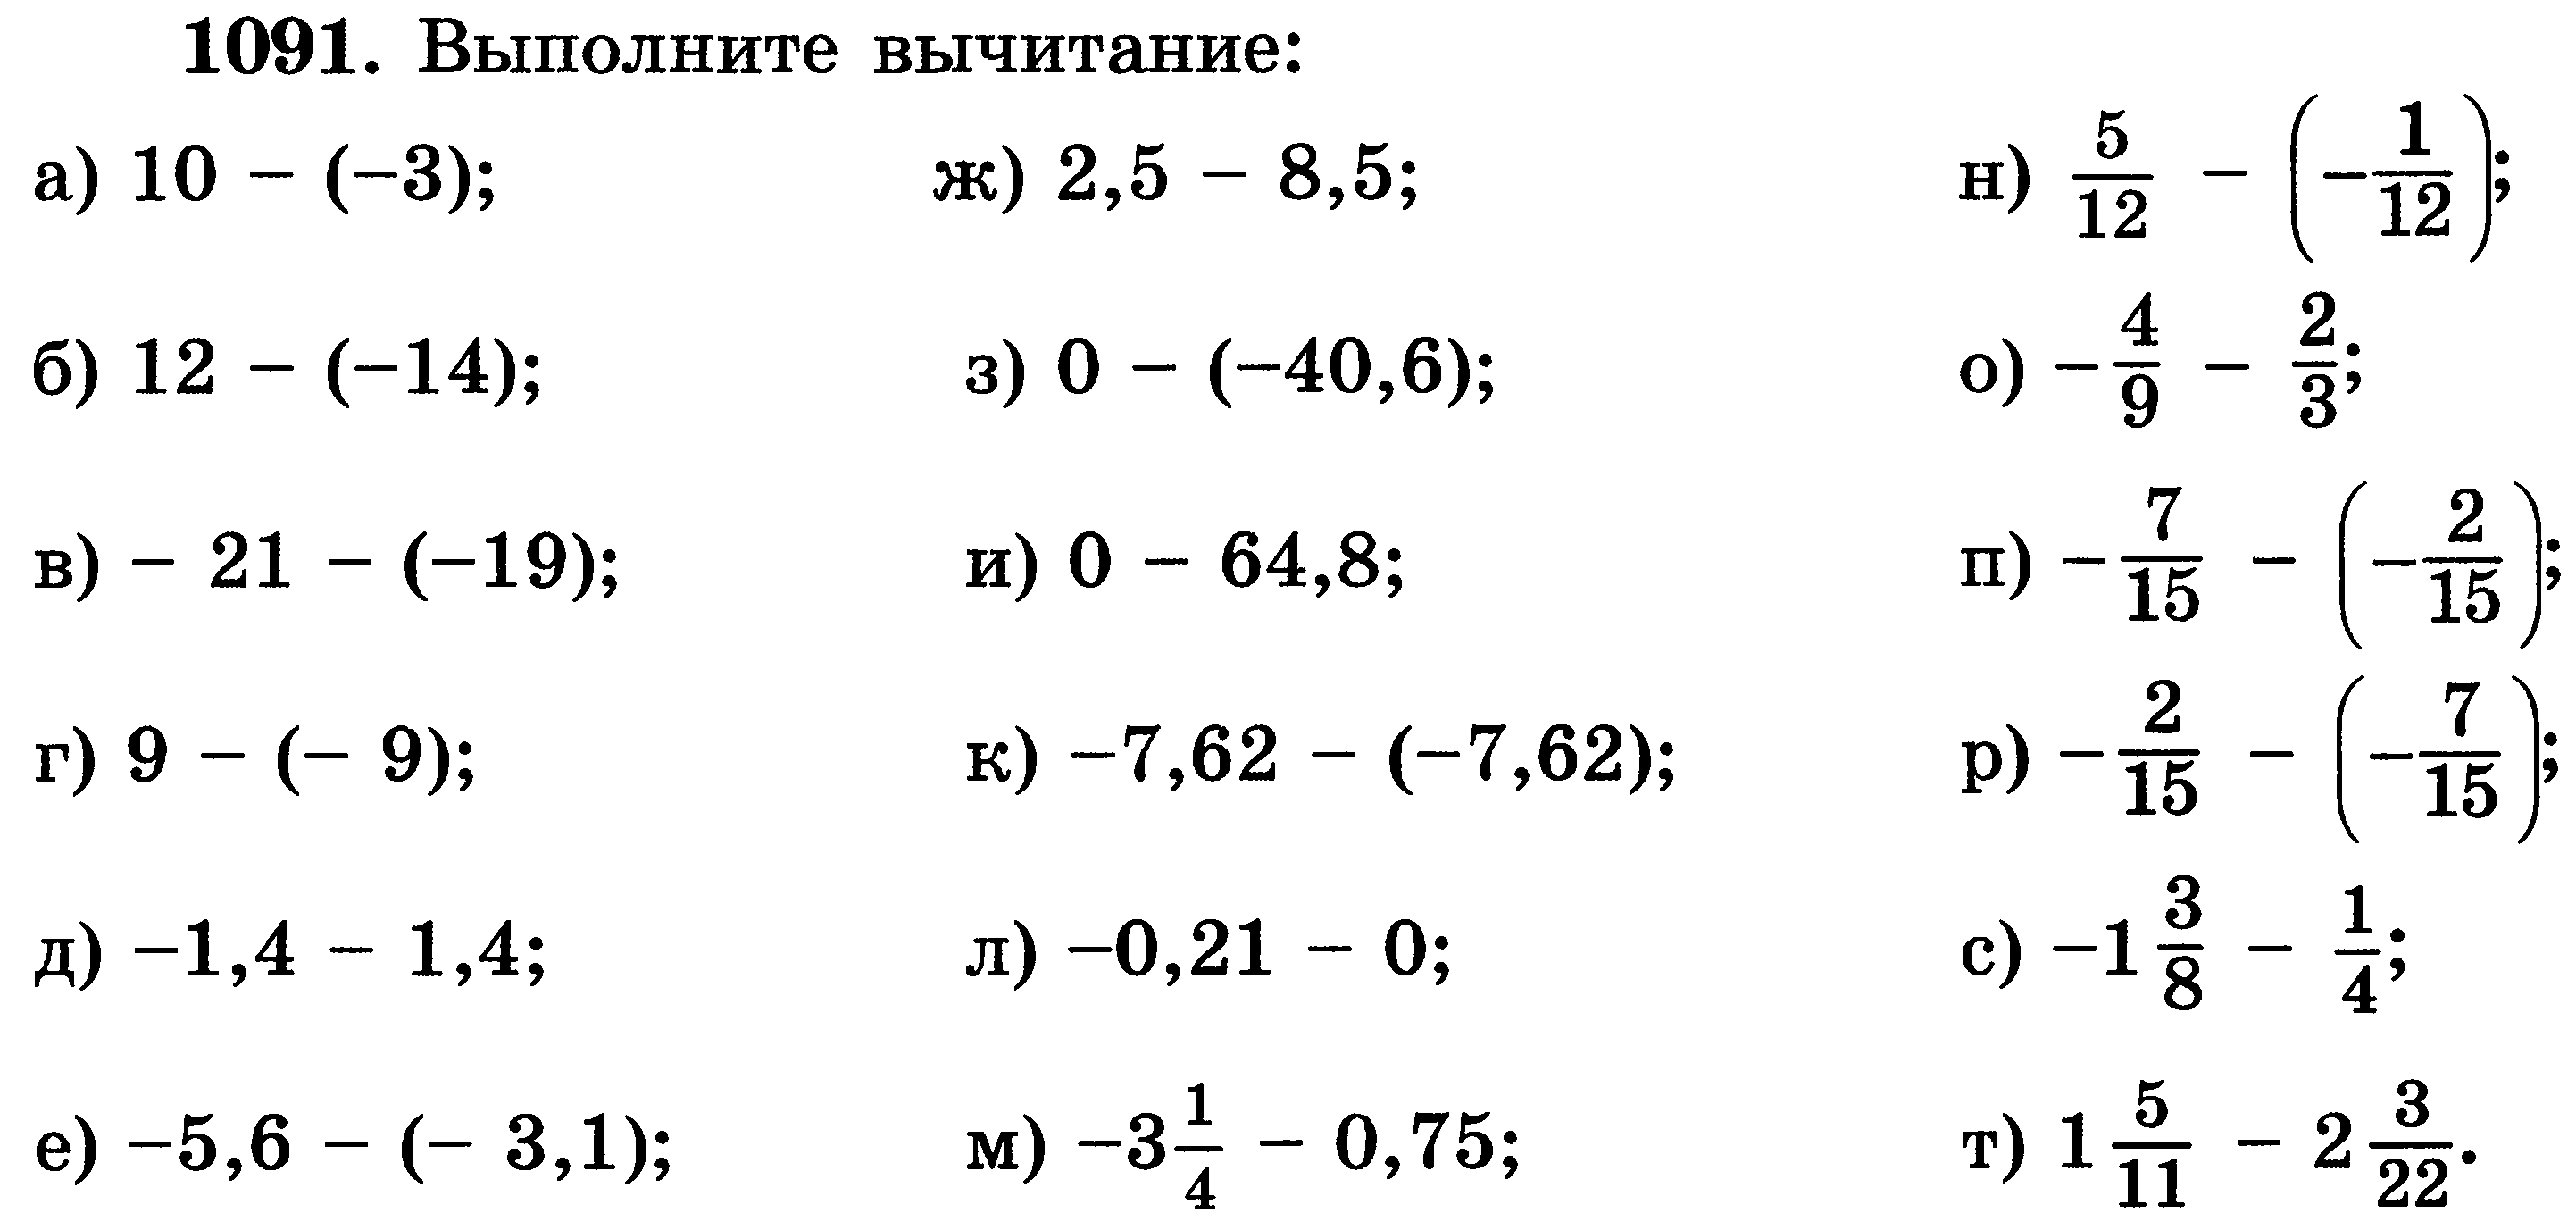 Решение примеров отрицательные и положительные. Slojeniye i vichitaniye Chisel s raznimi znakami. Сложение вычиитания чисел с разнымизнаками. Сложение отрицательных и положительных чисел примеры. Сложение и вычитание рациональных чисел примеры.